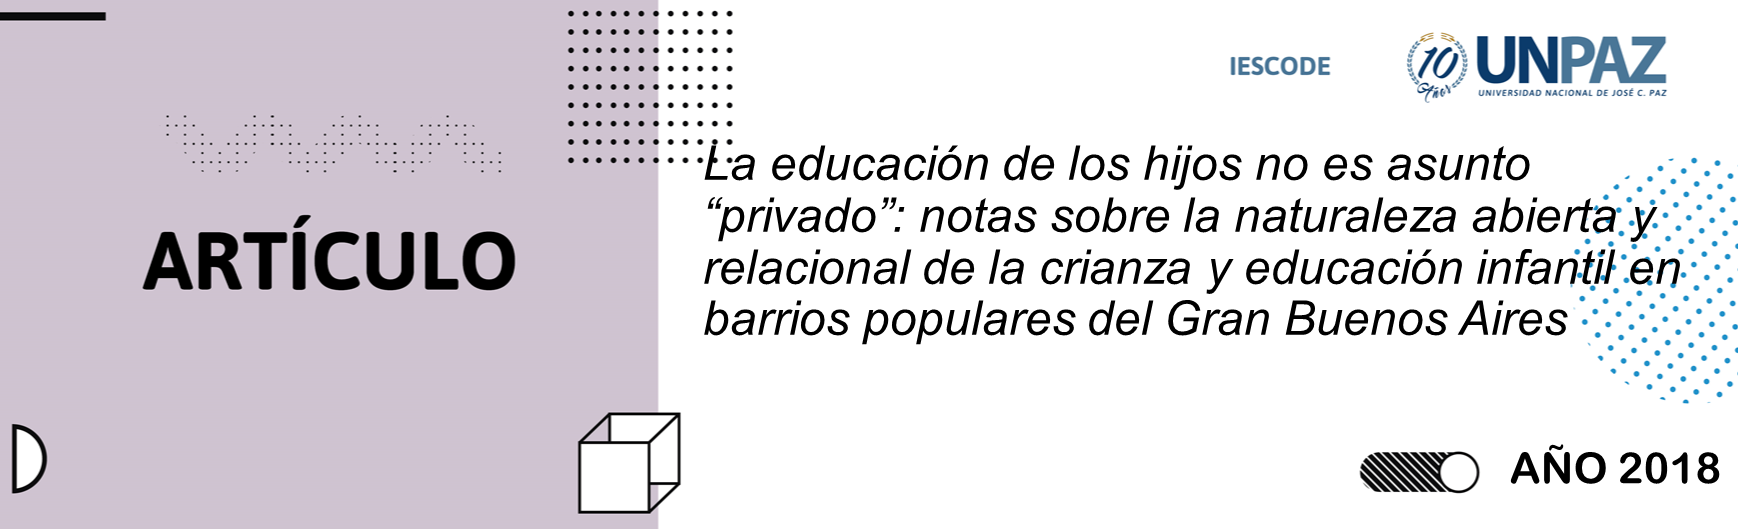 La educación de los hijos no es asunto “privado”: notas sobre la naturaleza abierta y relacional de la crianza y educación infantil en barrios populares del Gran Buenos Aires